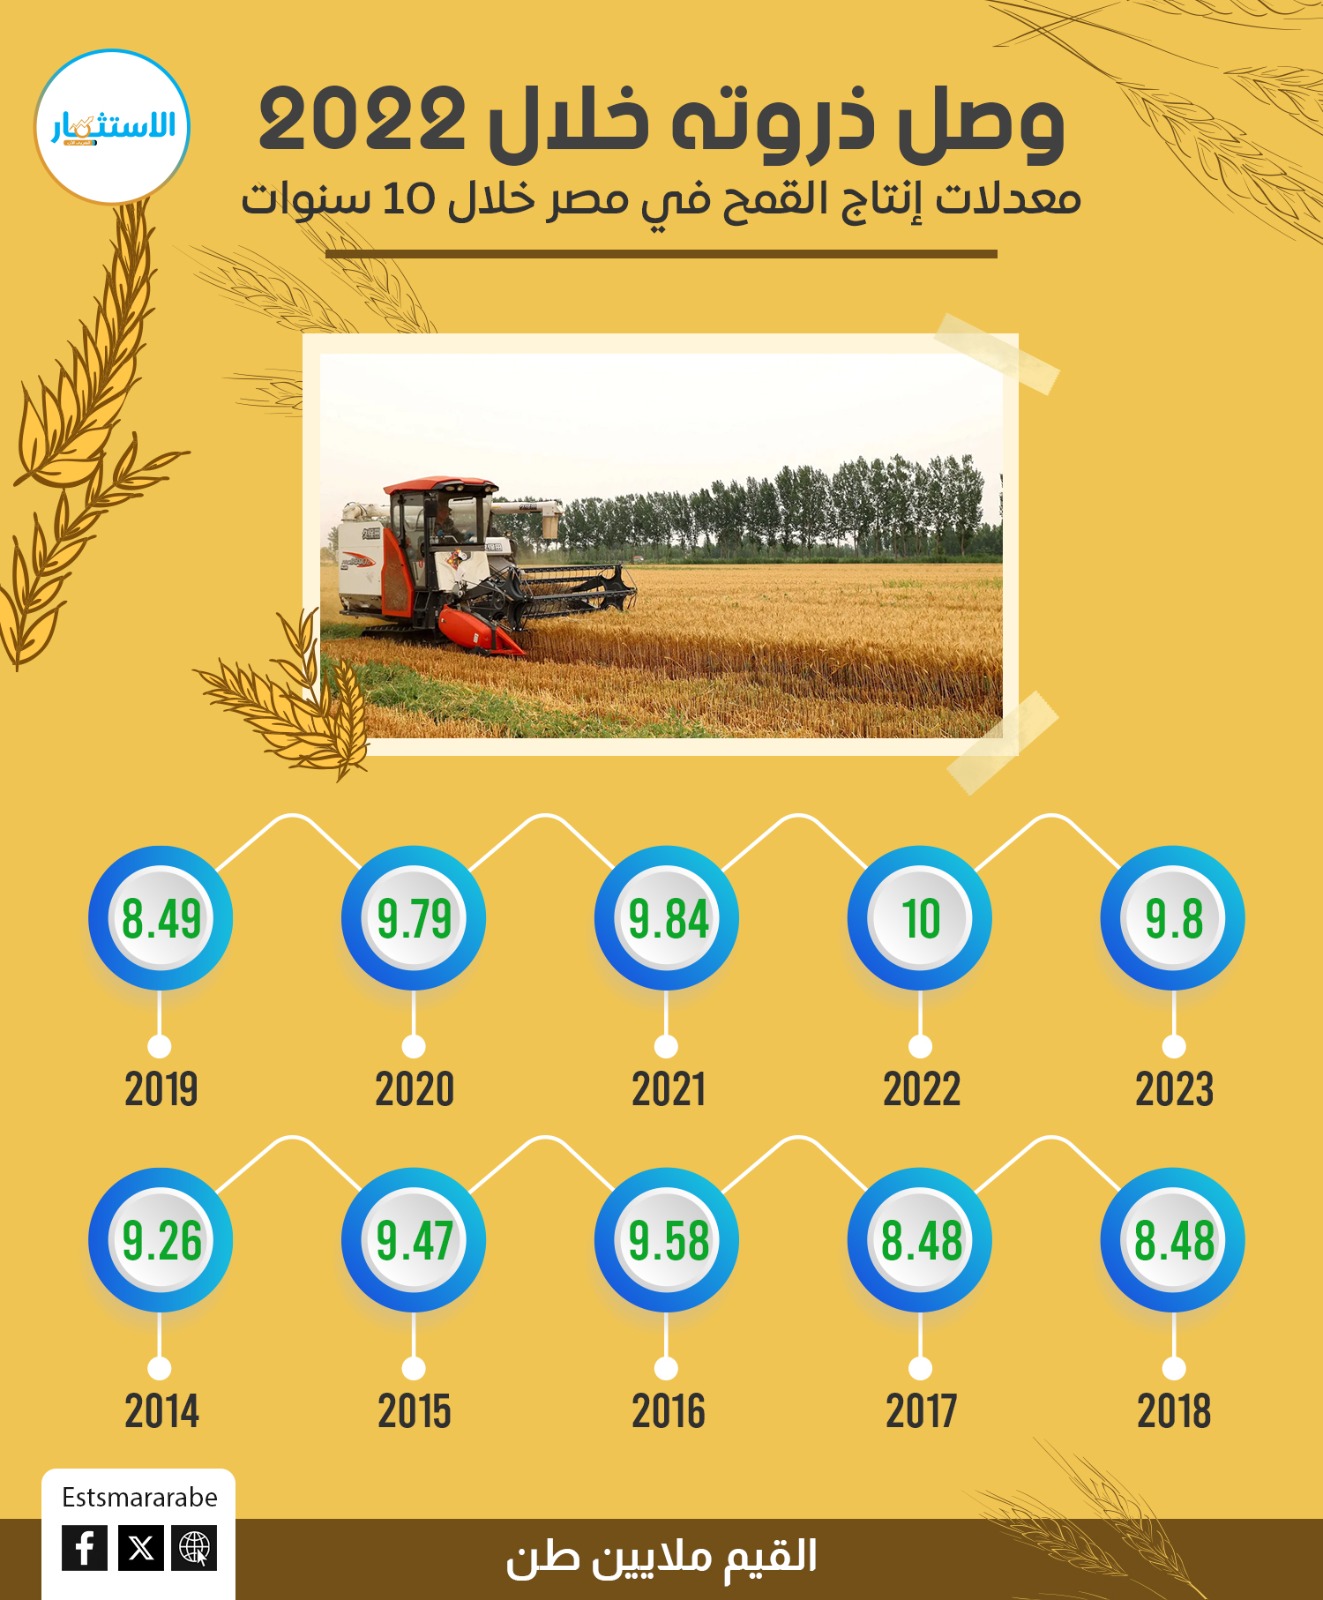 إنفوجرافيك|| كيف ارتفعت معدلات إنتاج القمح في مصر خلال 10 سنوات؟